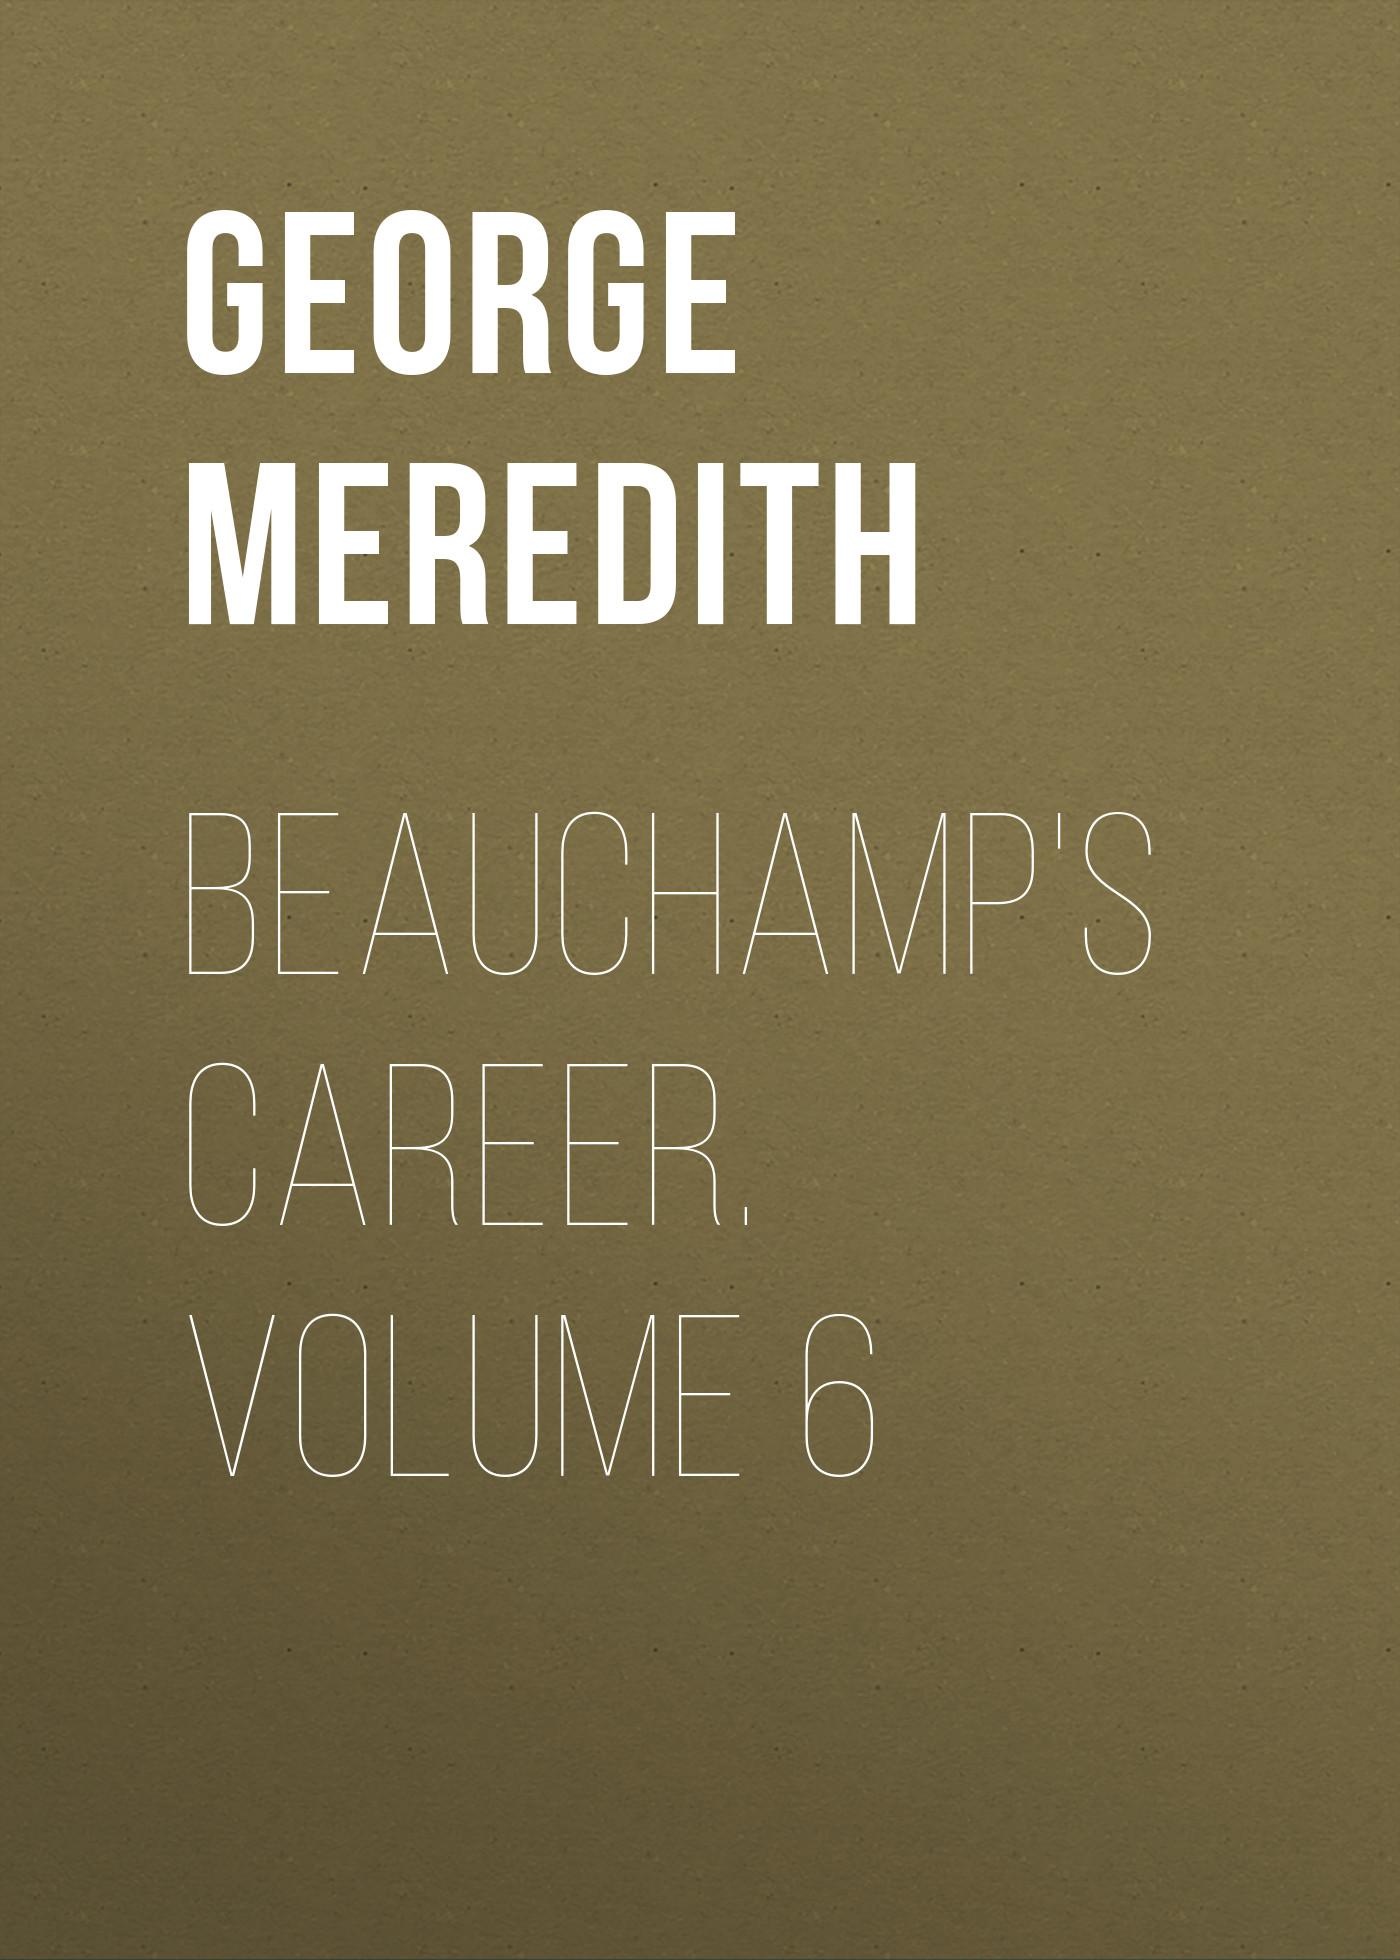 Книга Beauchamp's Career. Volume 6 из серии , созданная George Meredith, может относится к жанру Зарубежная классика, Литература 19 века, Зарубежная старинная литература. Стоимость электронной книги Beauchamp's Career. Volume 6 с идентификатором 36096317 составляет 0 руб.